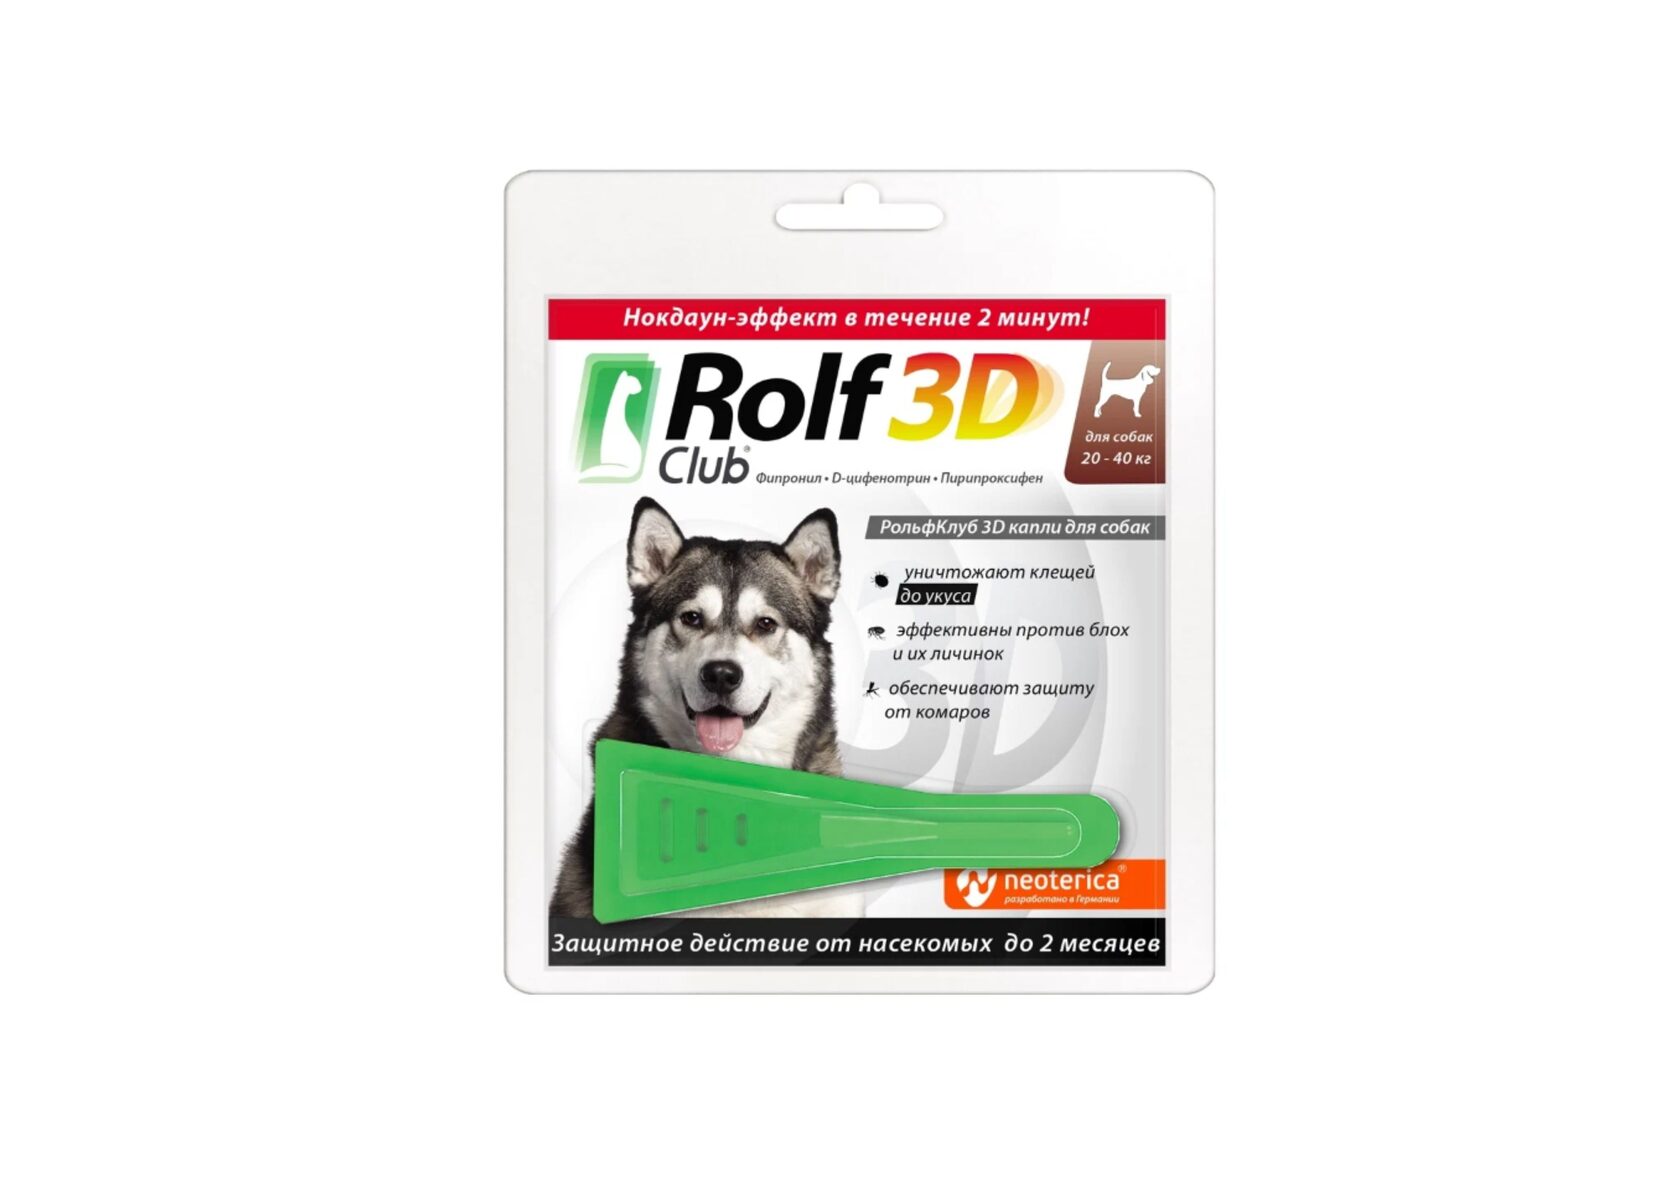 Rolf 3d для собак 20-40 кг. ROLFСLUB 3d капли от клещей и блох для собак 40-60 кг. ROLFСLUB 3d капли от клещей и блох для собак 20-40 кг. Капли от блох для собак РОЛЬФ. Рольф 3д капли для собак отзывы